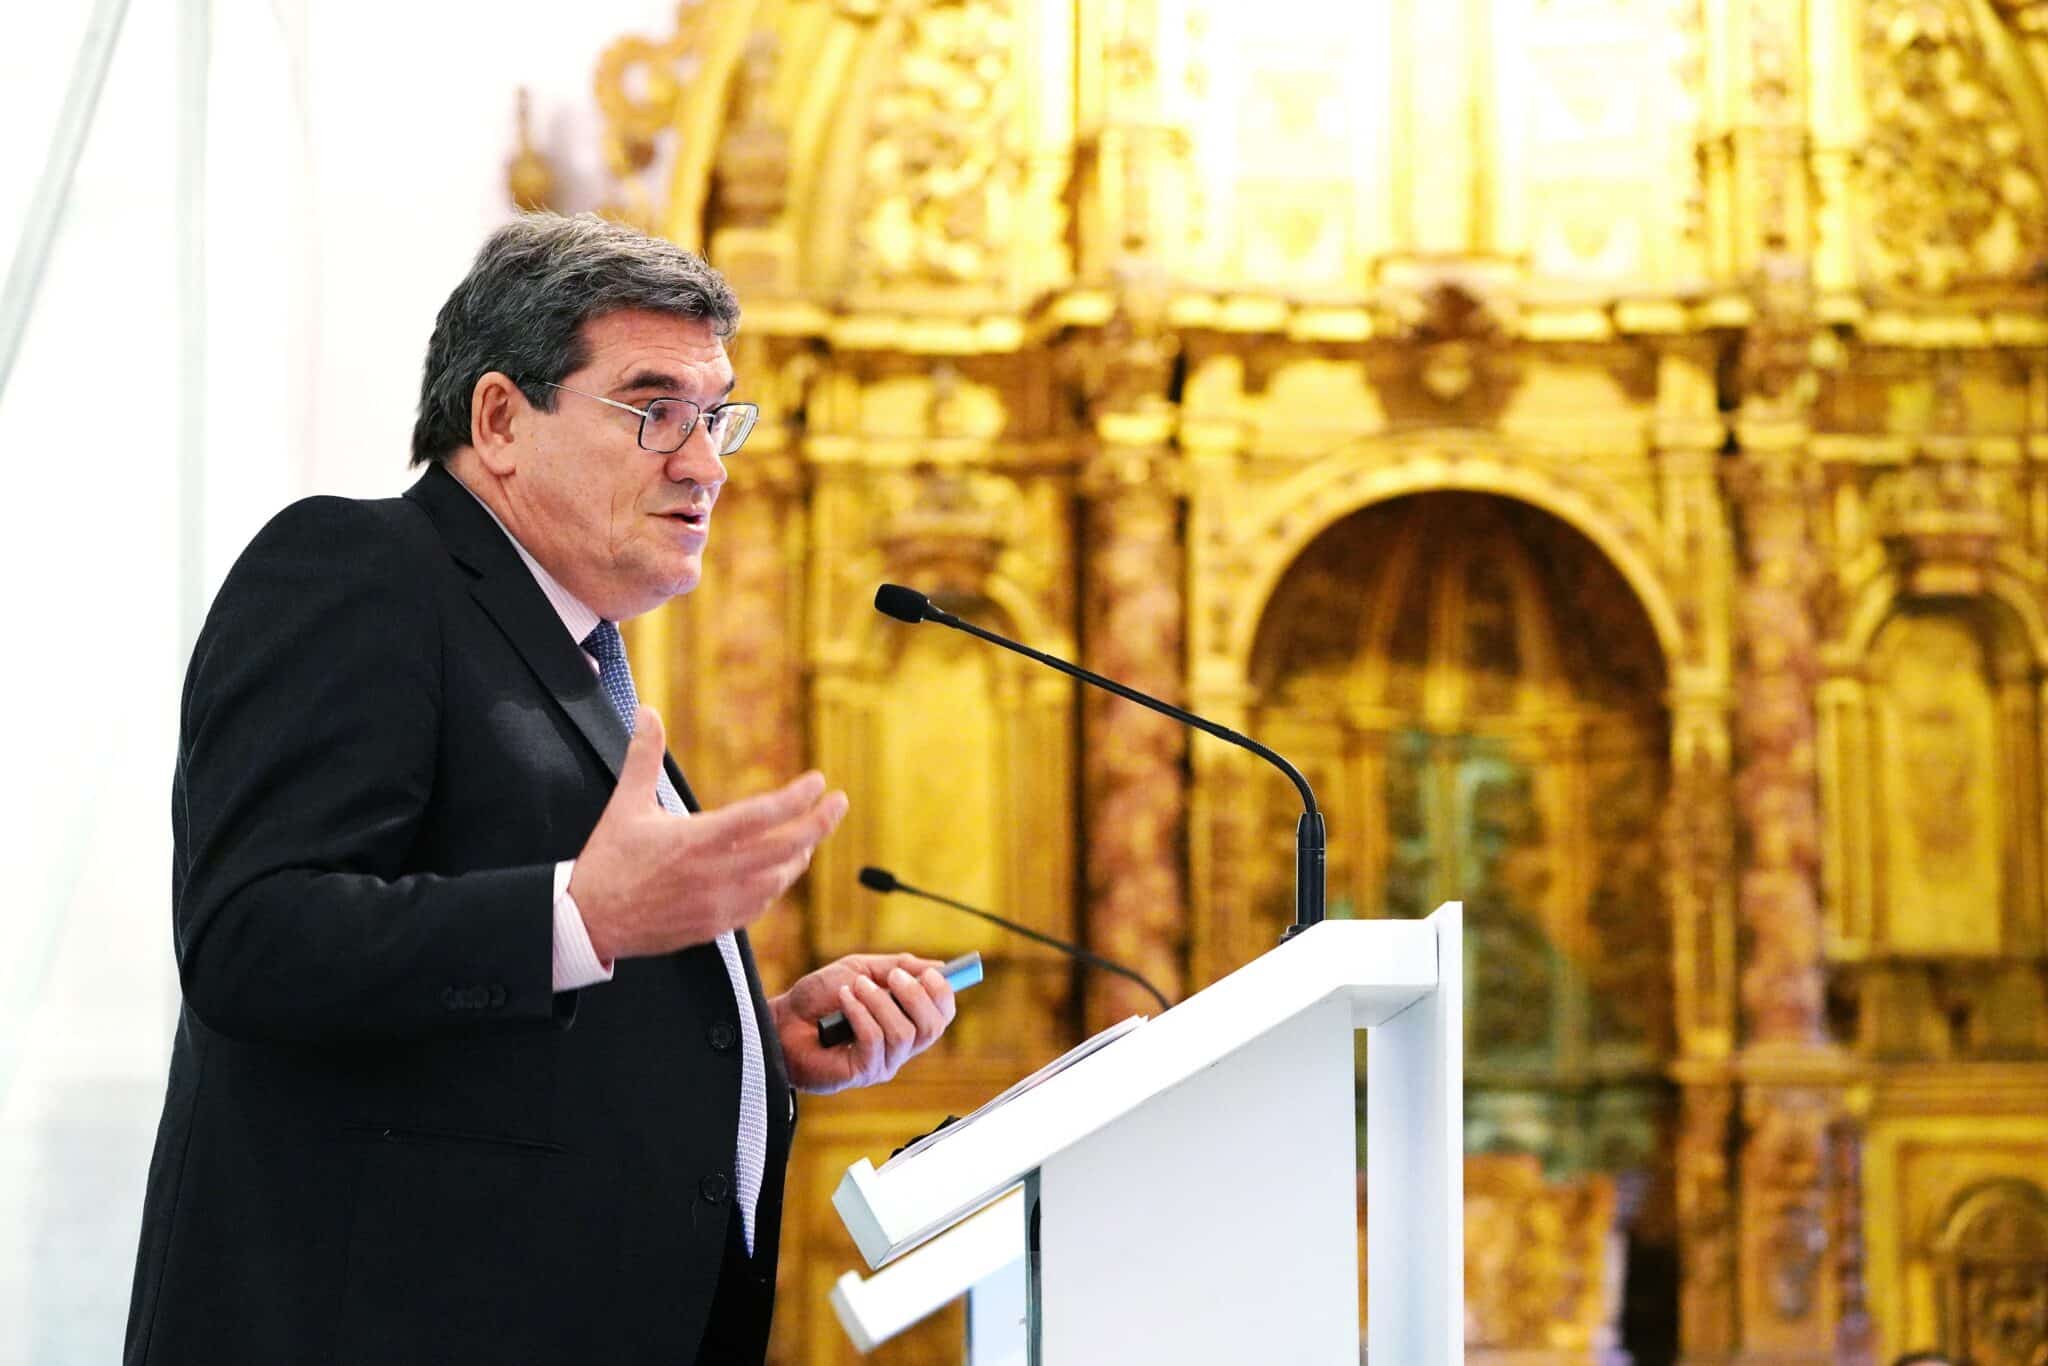 El Ministro de Inclusión, Seguridad Social y Migraciones, José Luis Escrivá Belmonte